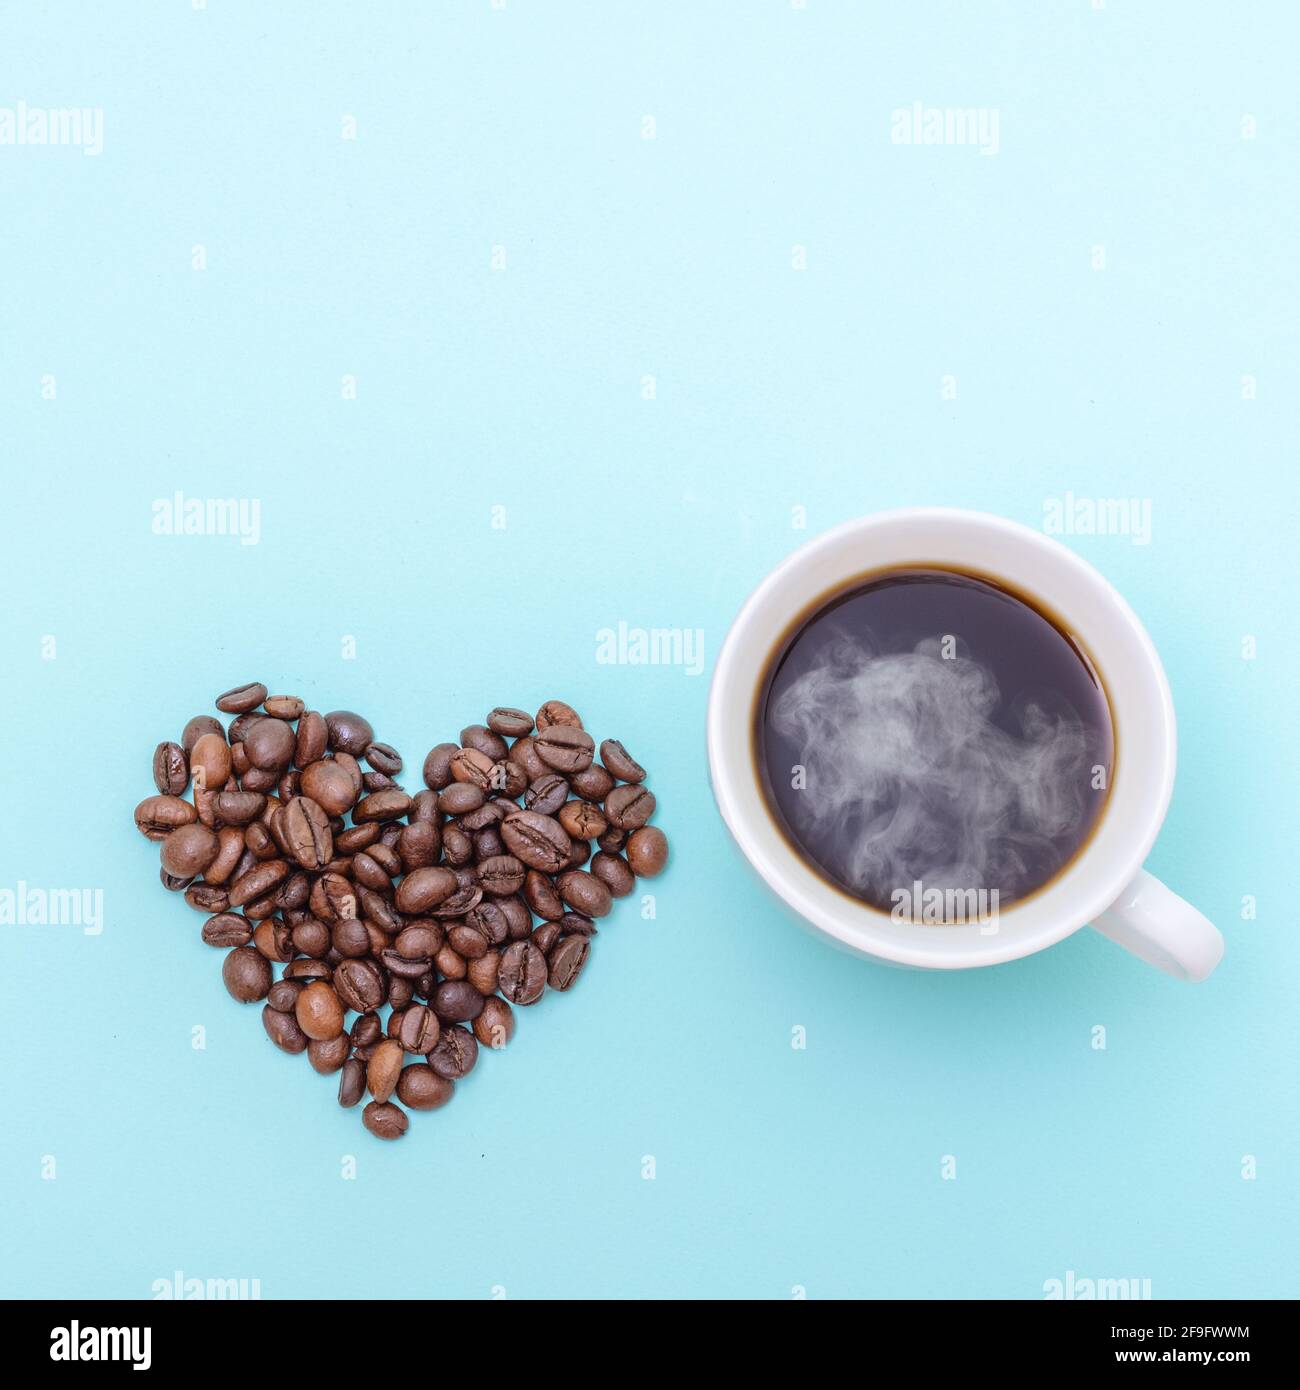 Tasse dampfenden heißen schwarzen Kaffee und Körner Kaffee in Form eines Herzens auf blauem Hintergrund, Kopierfläche, Draufsicht, quadratische Form. Kaffee am Morgen Stockfoto